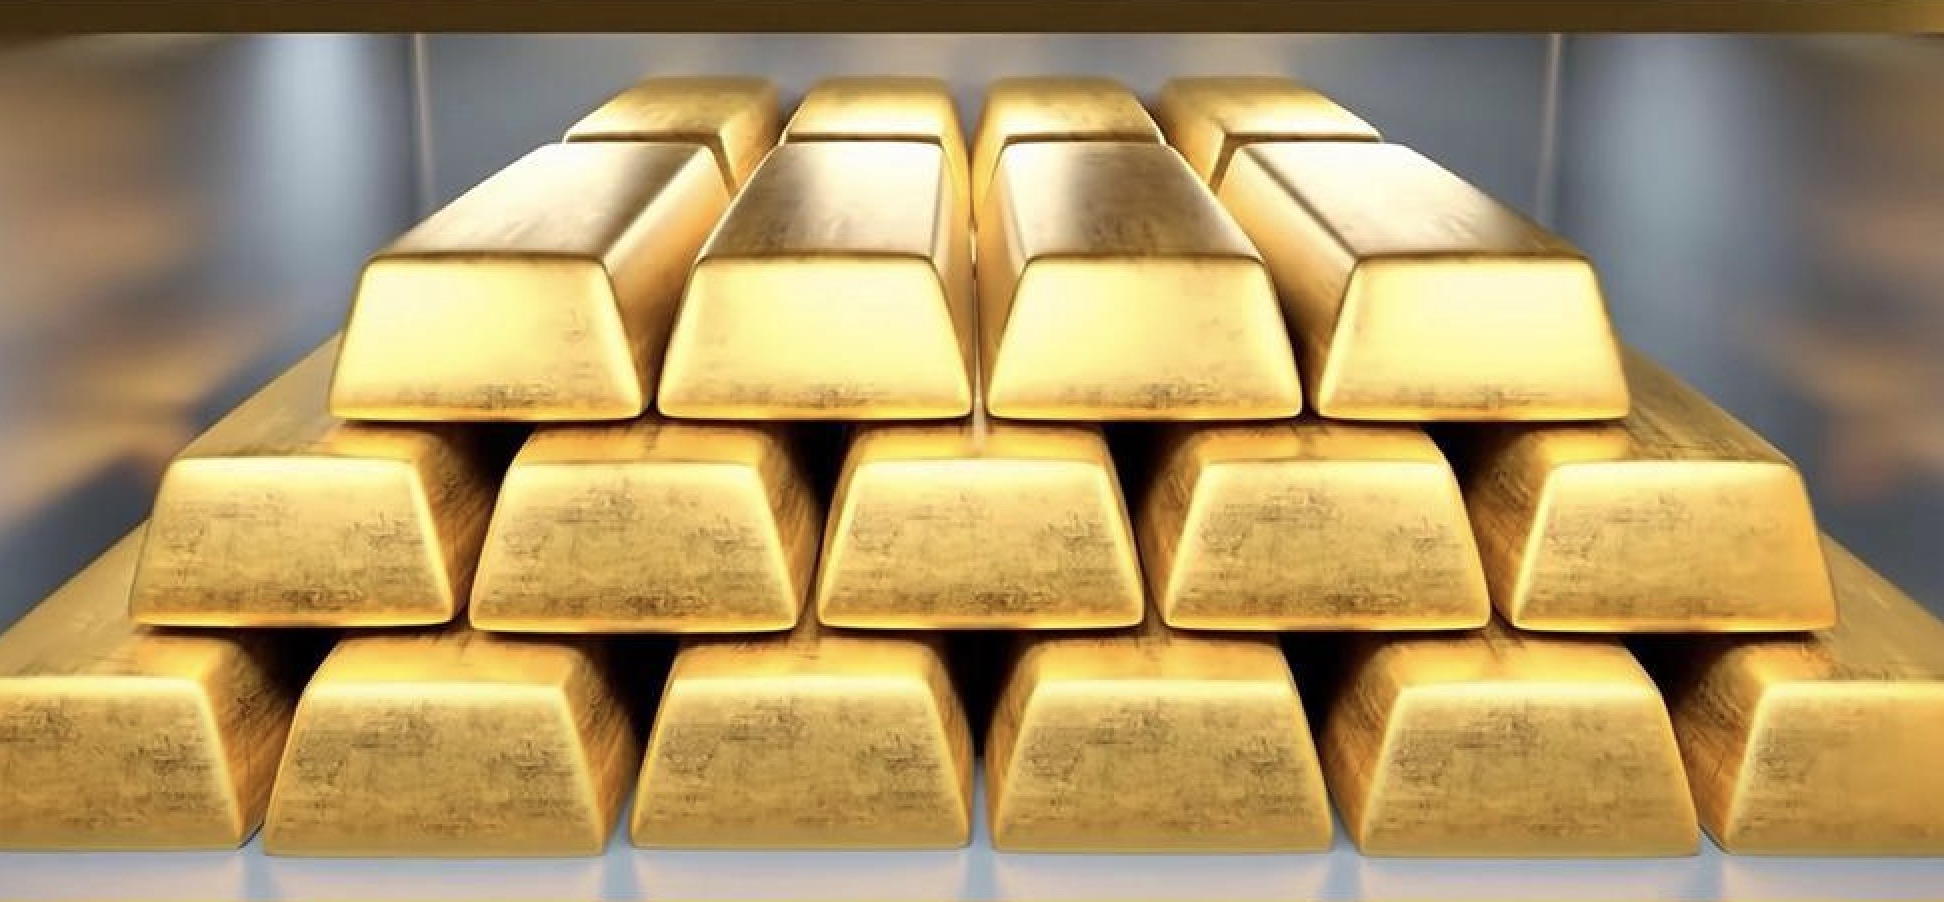 คำเตือนการซื้อขายทองคำ: CPI สหรัฐฯ เพิ่มขึ้นเกินคาด อย่าคิดลดอัตราดอกเบี้ยในเดือนมิถุนายนด้วยซ้ำ! ราคาทองร่วงจากสูงสุดเป็นประวัติการณ์ นาทีประชุม “ชดเชยขาดทุน”